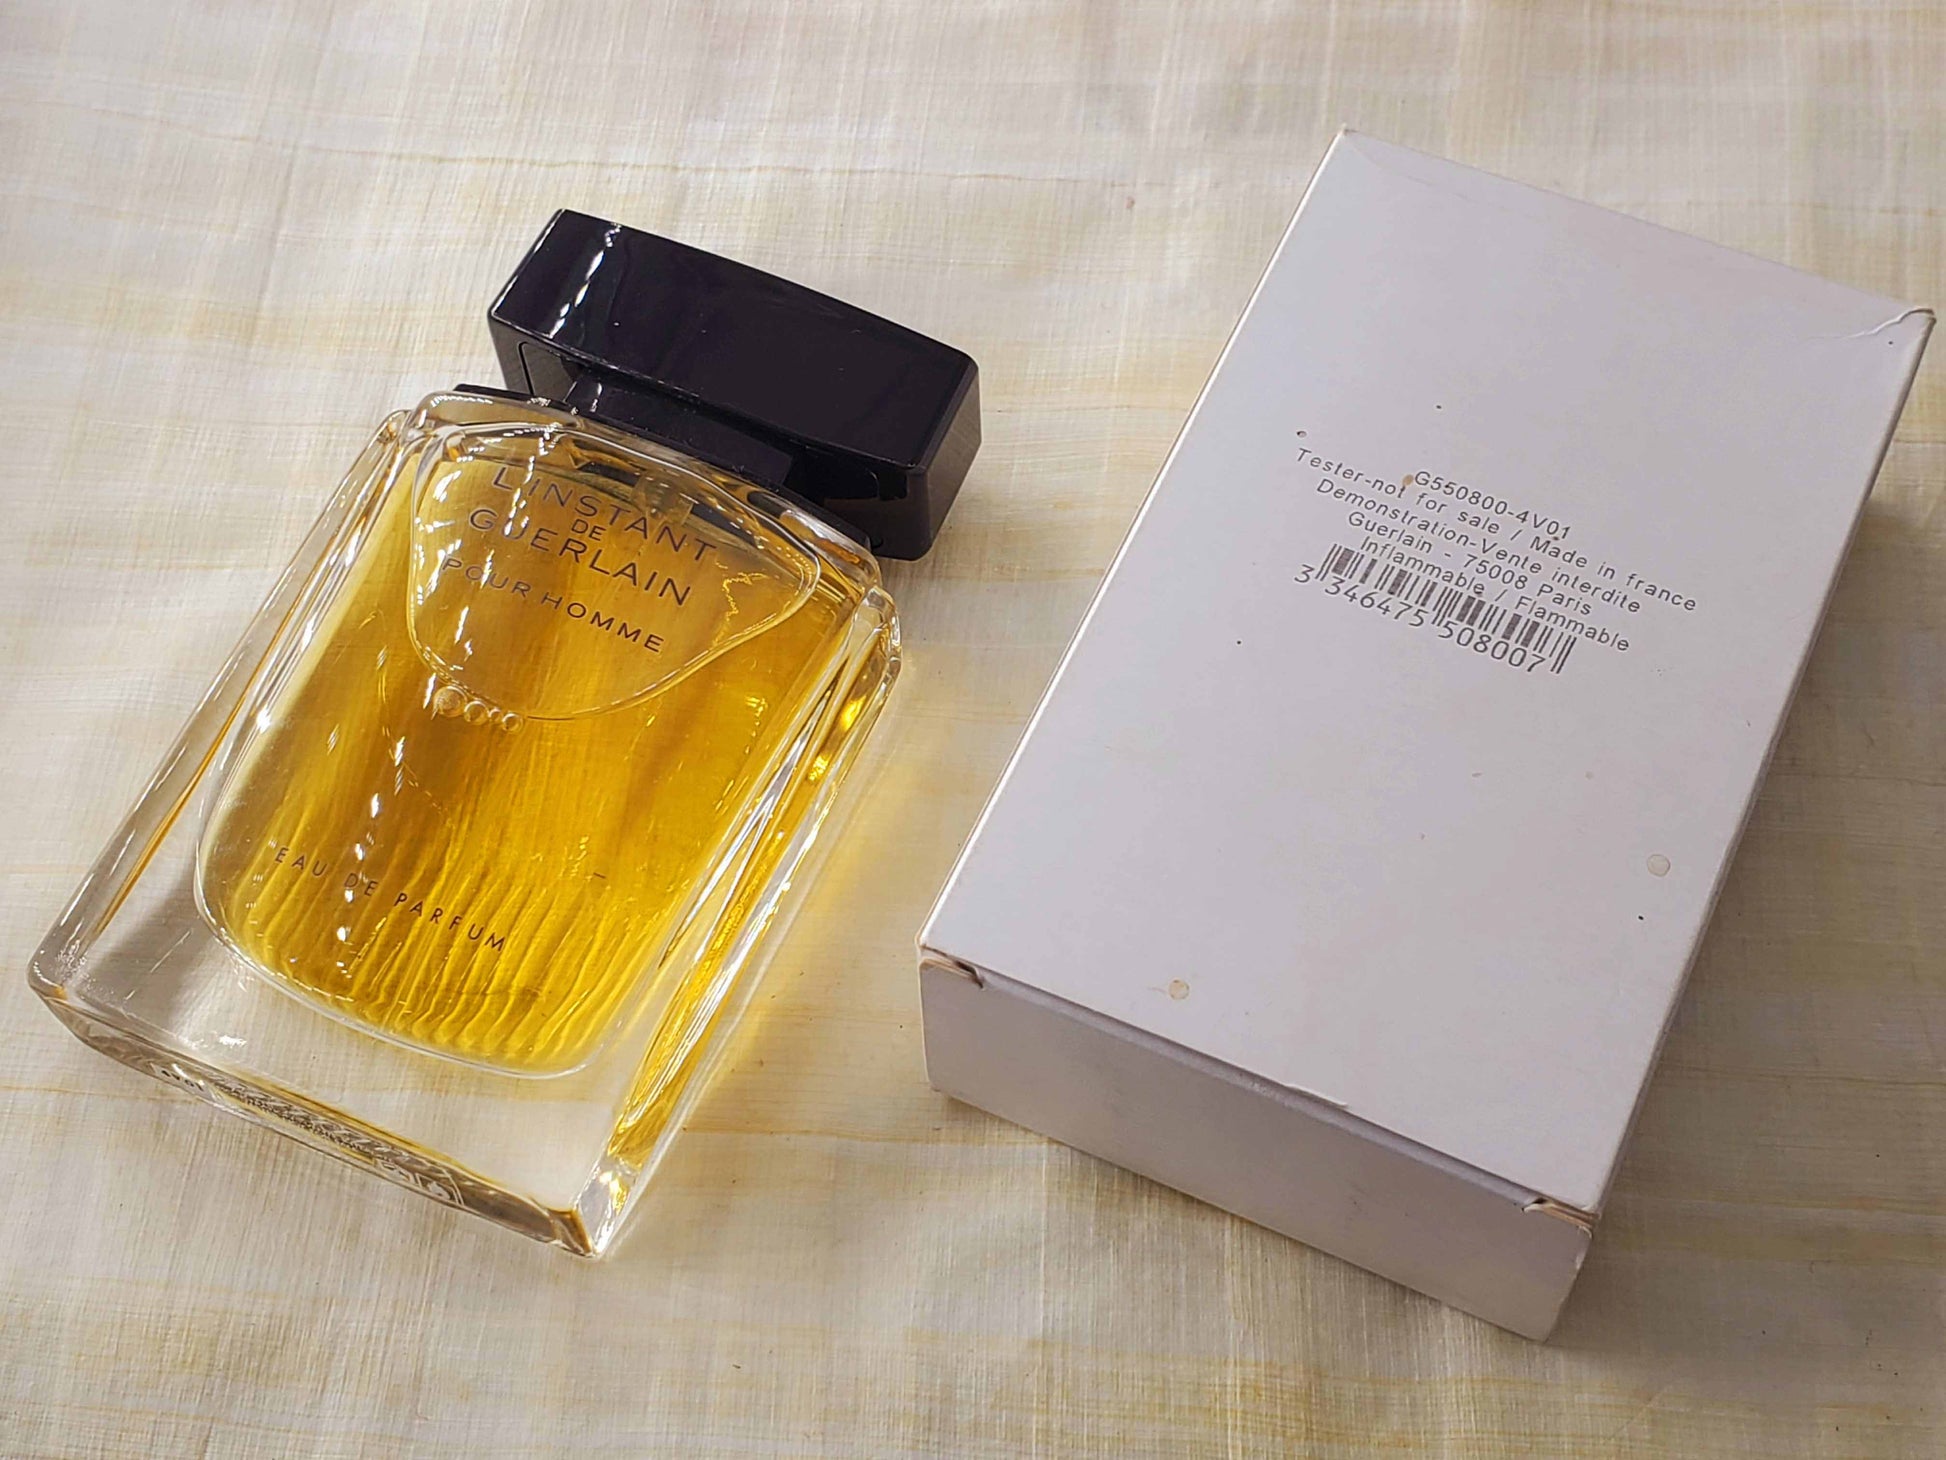 L'Instant de Guerlain Pour Homme Eau Extreme Vintage Tester - Perfumani